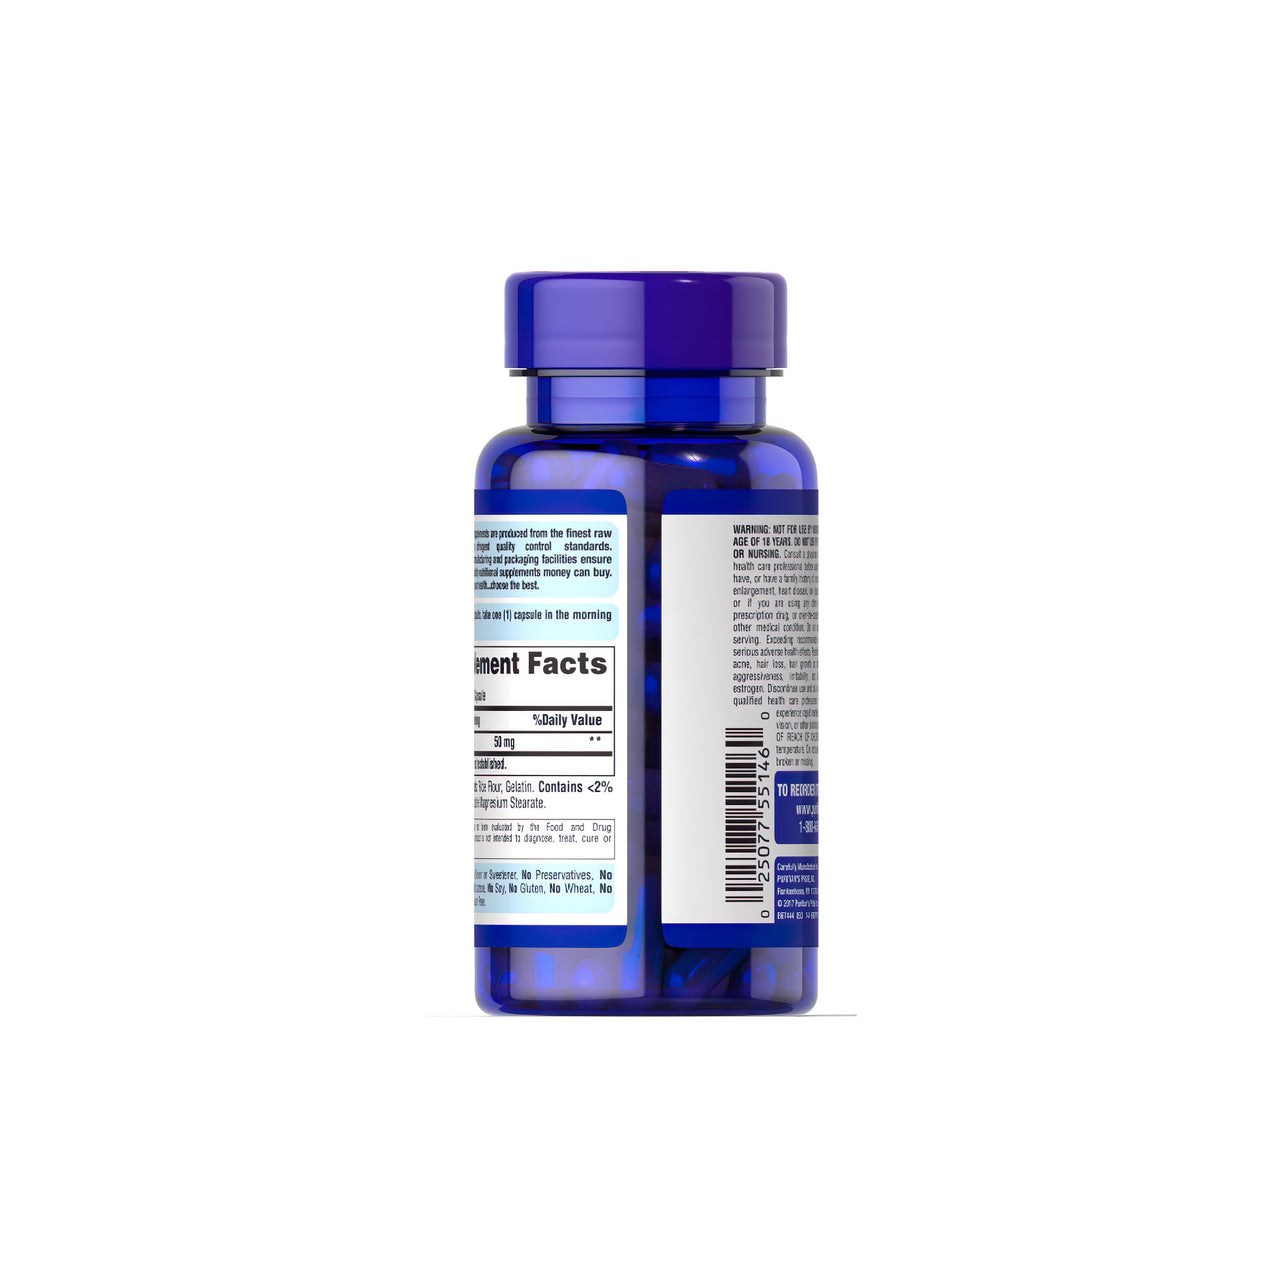 Um frasco de Puritan's Pride Pregnenolone 50 mg 90 Rapid Release Capsules para um regime de envelhecimento saudável sobre um fundo branco.